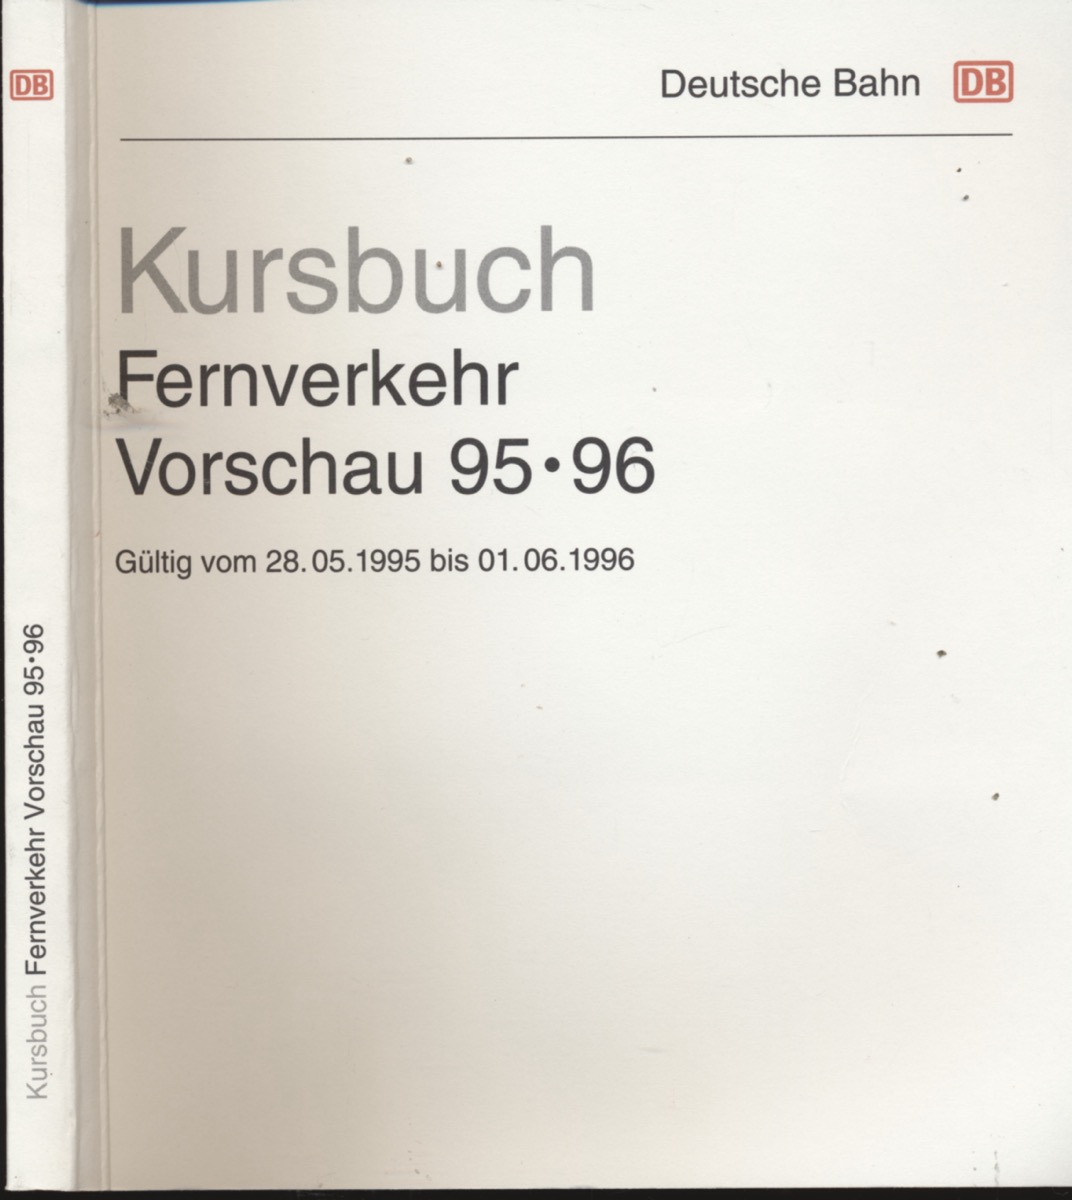 DEUTSCHE BAHN (Hrg.)  Kursbuch Fernverkehr 1995/96 / Vorschau, gültig vom 28.05.1995 bis 01.06.1996. 